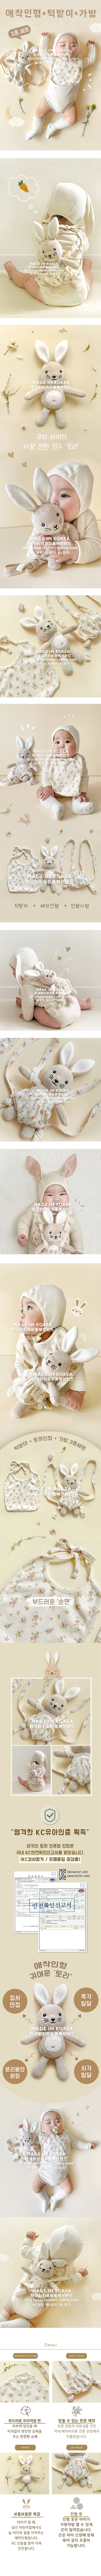 Ikii - Korean Baby Fashion - #babyoutfit - Rabbit Bib 3set